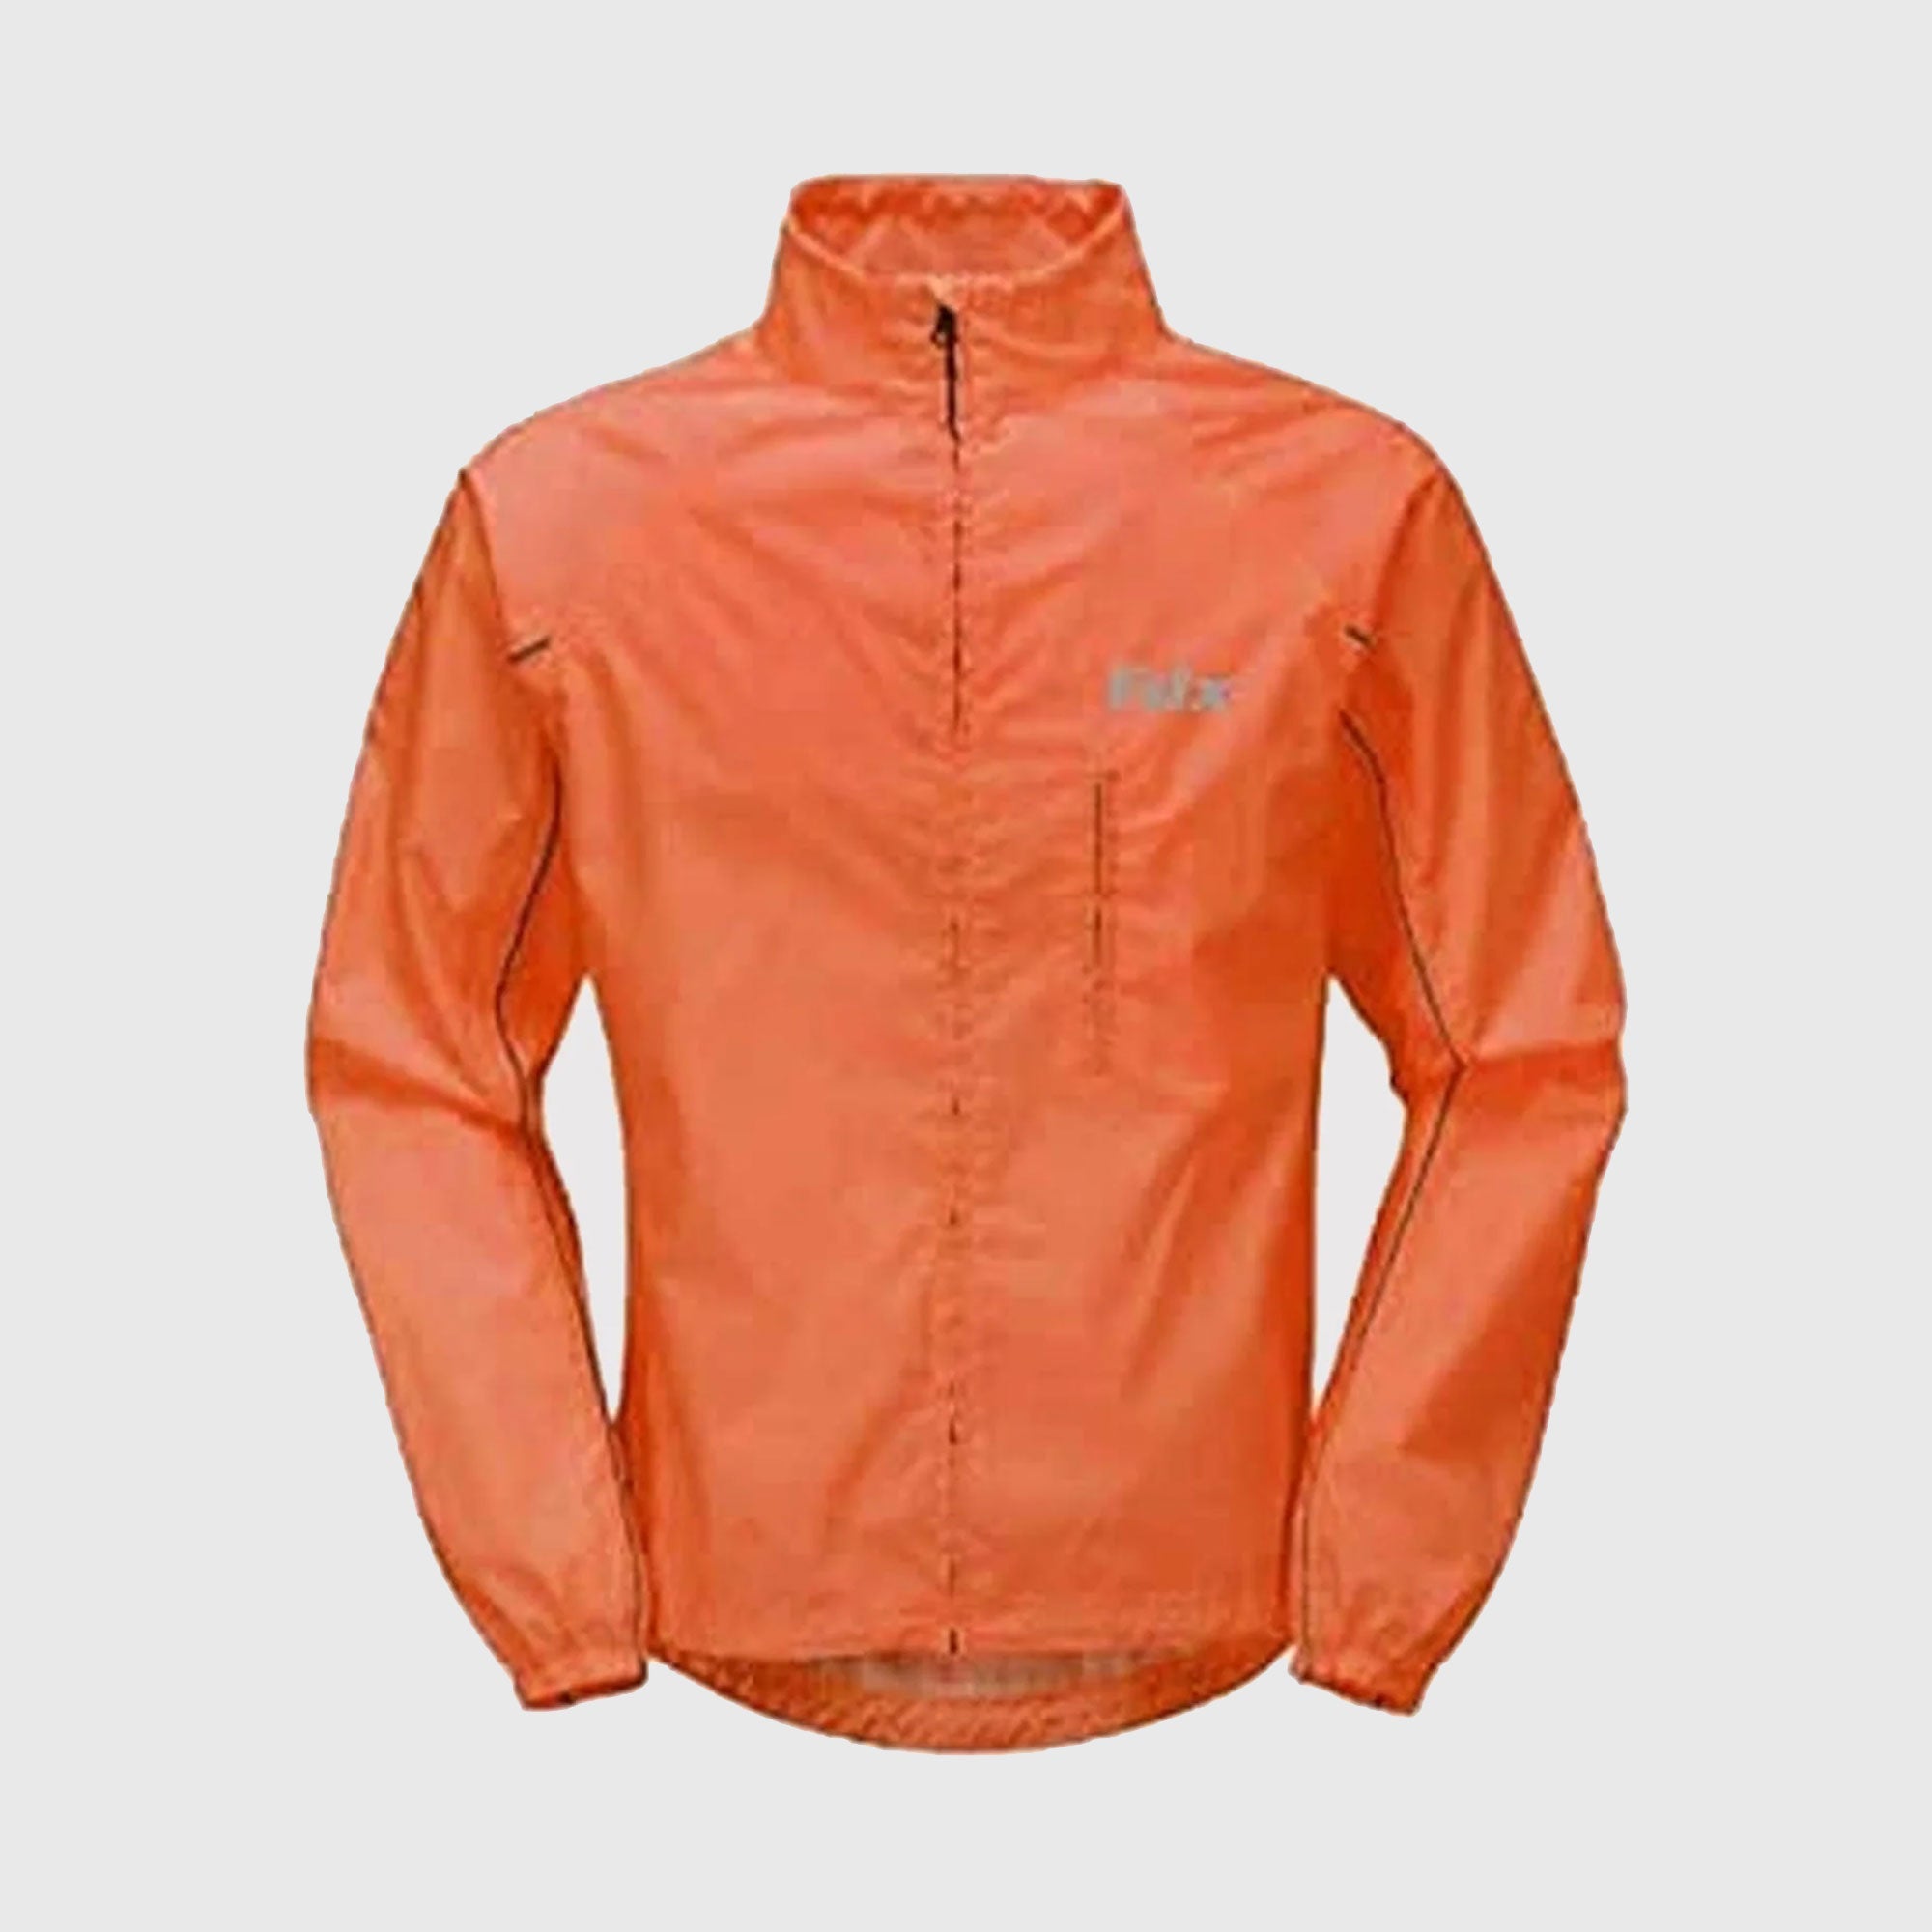 Fdx Defray Orange Men's Waterproof Cycling Jacket